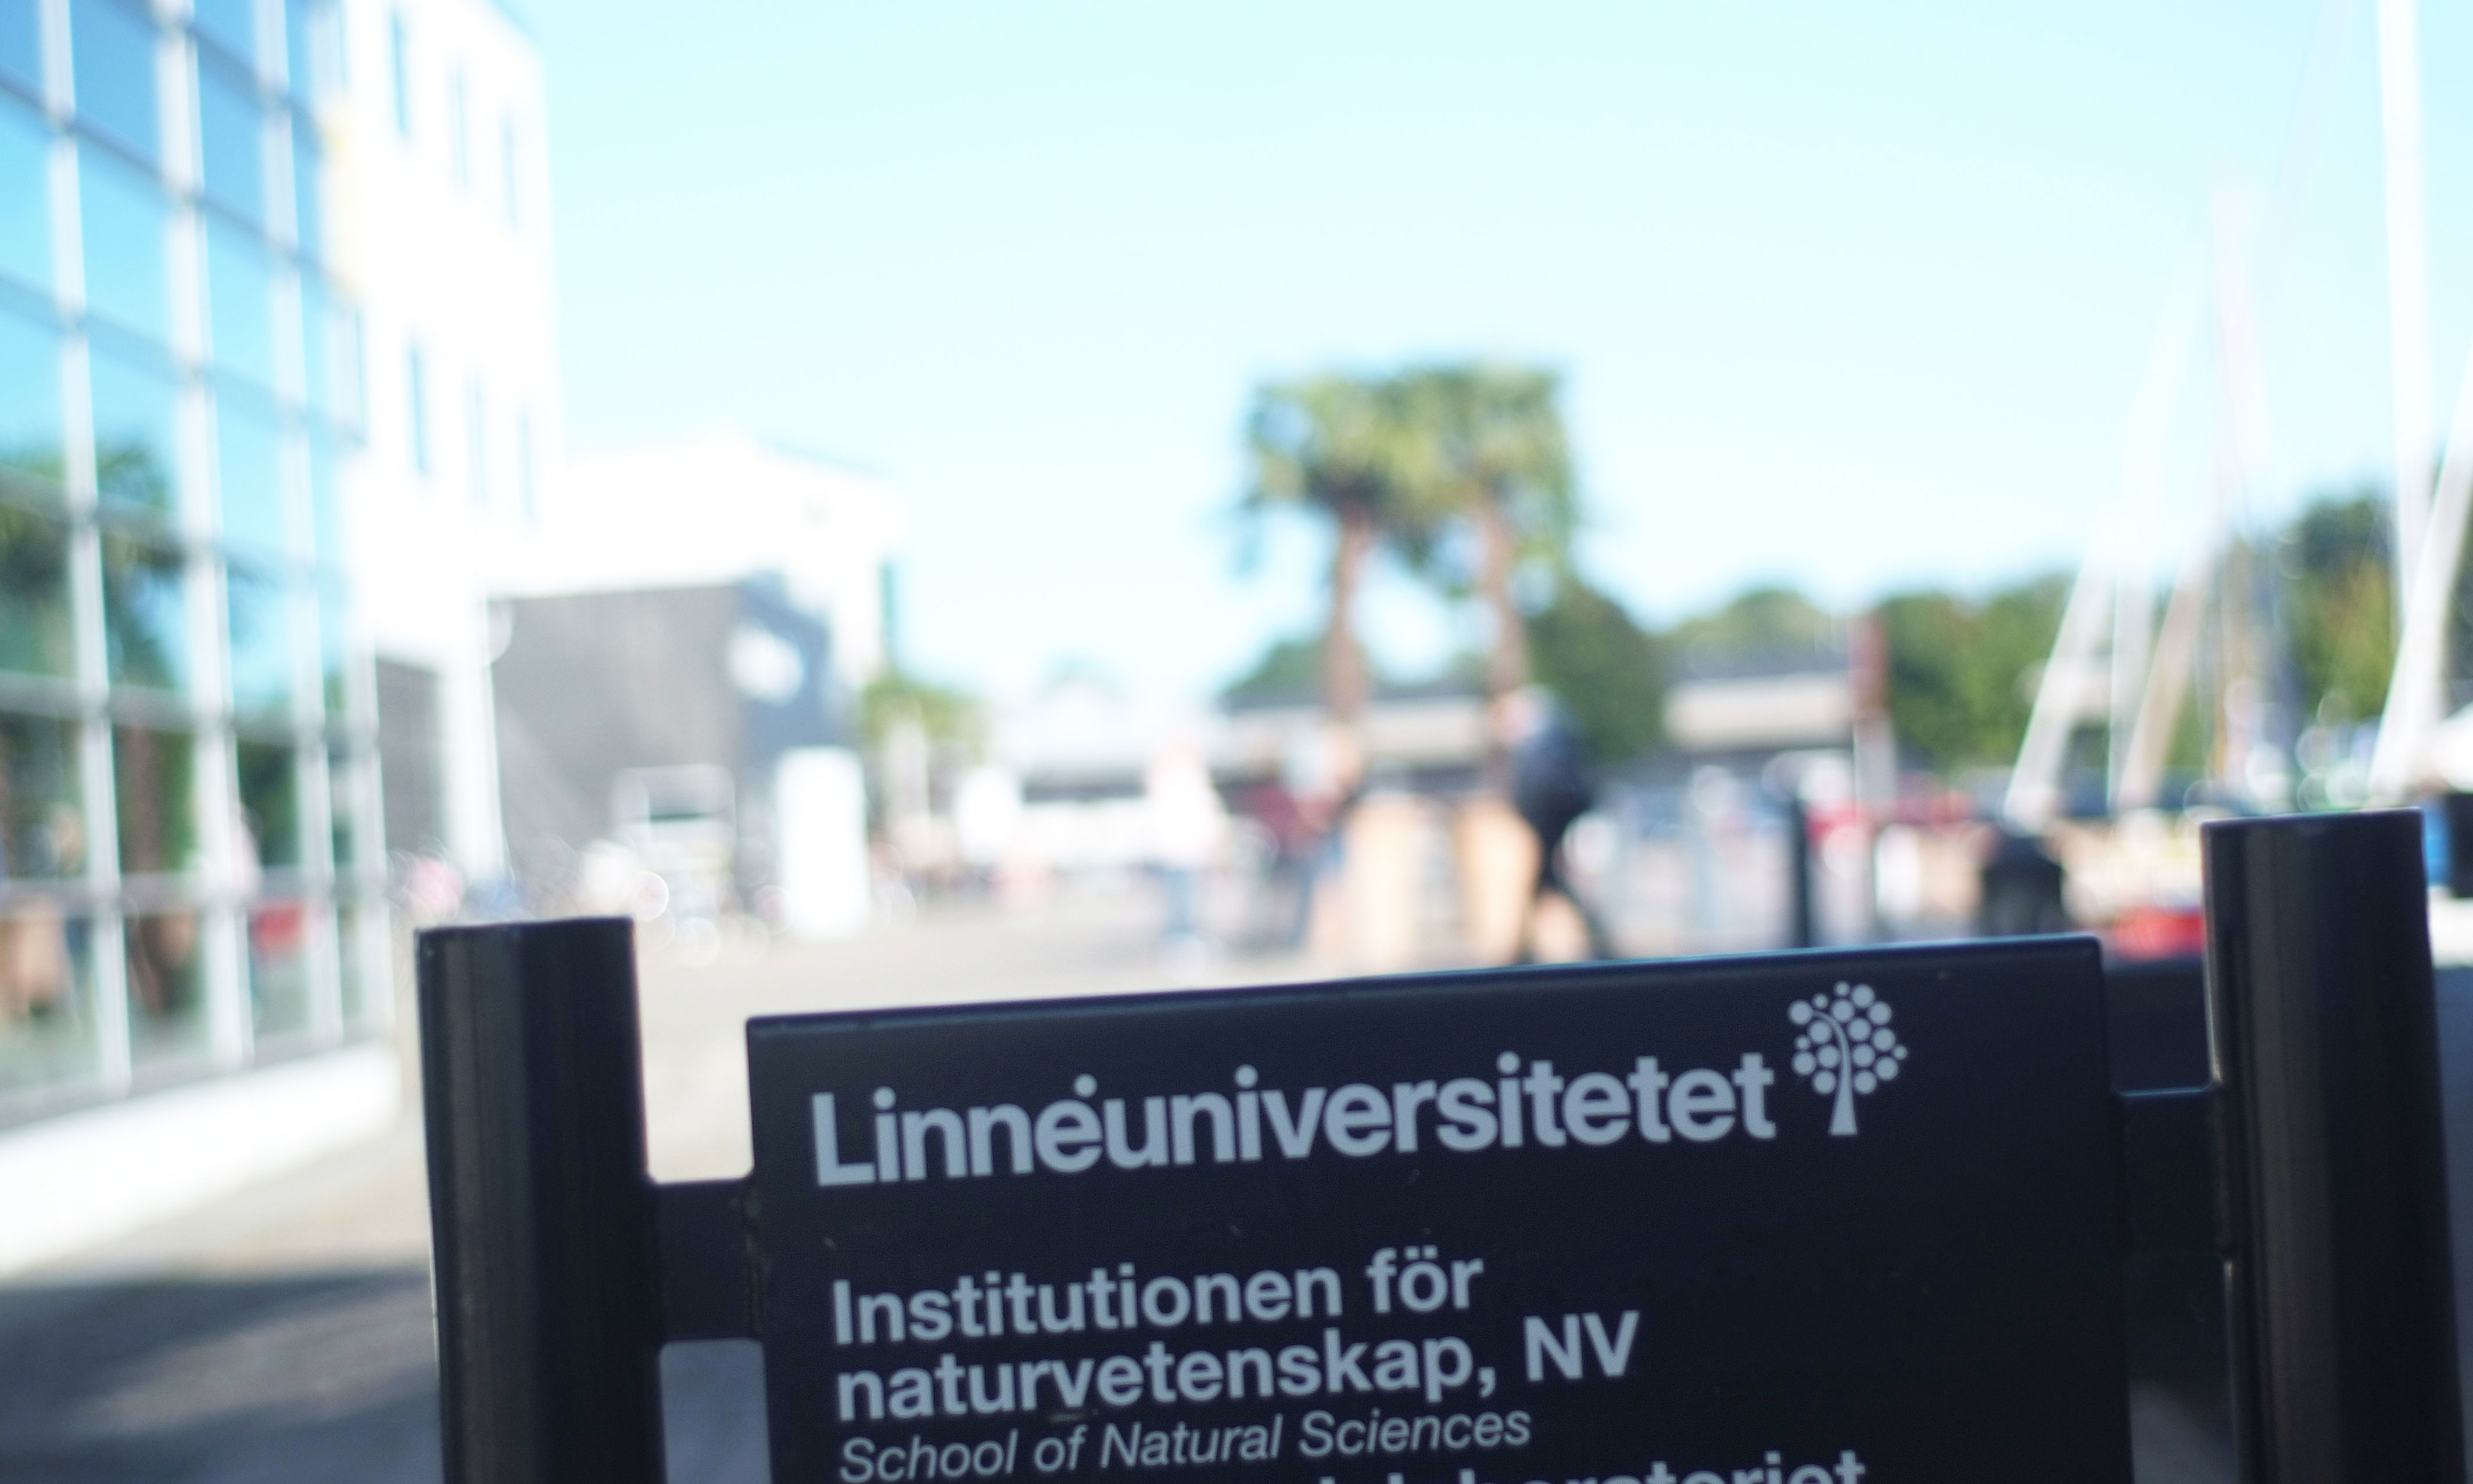 ST-medlemmen har haft olika former av tidsbegränsade anställningar på Linnéuniversitetet i flera omgångar sedan 2014.